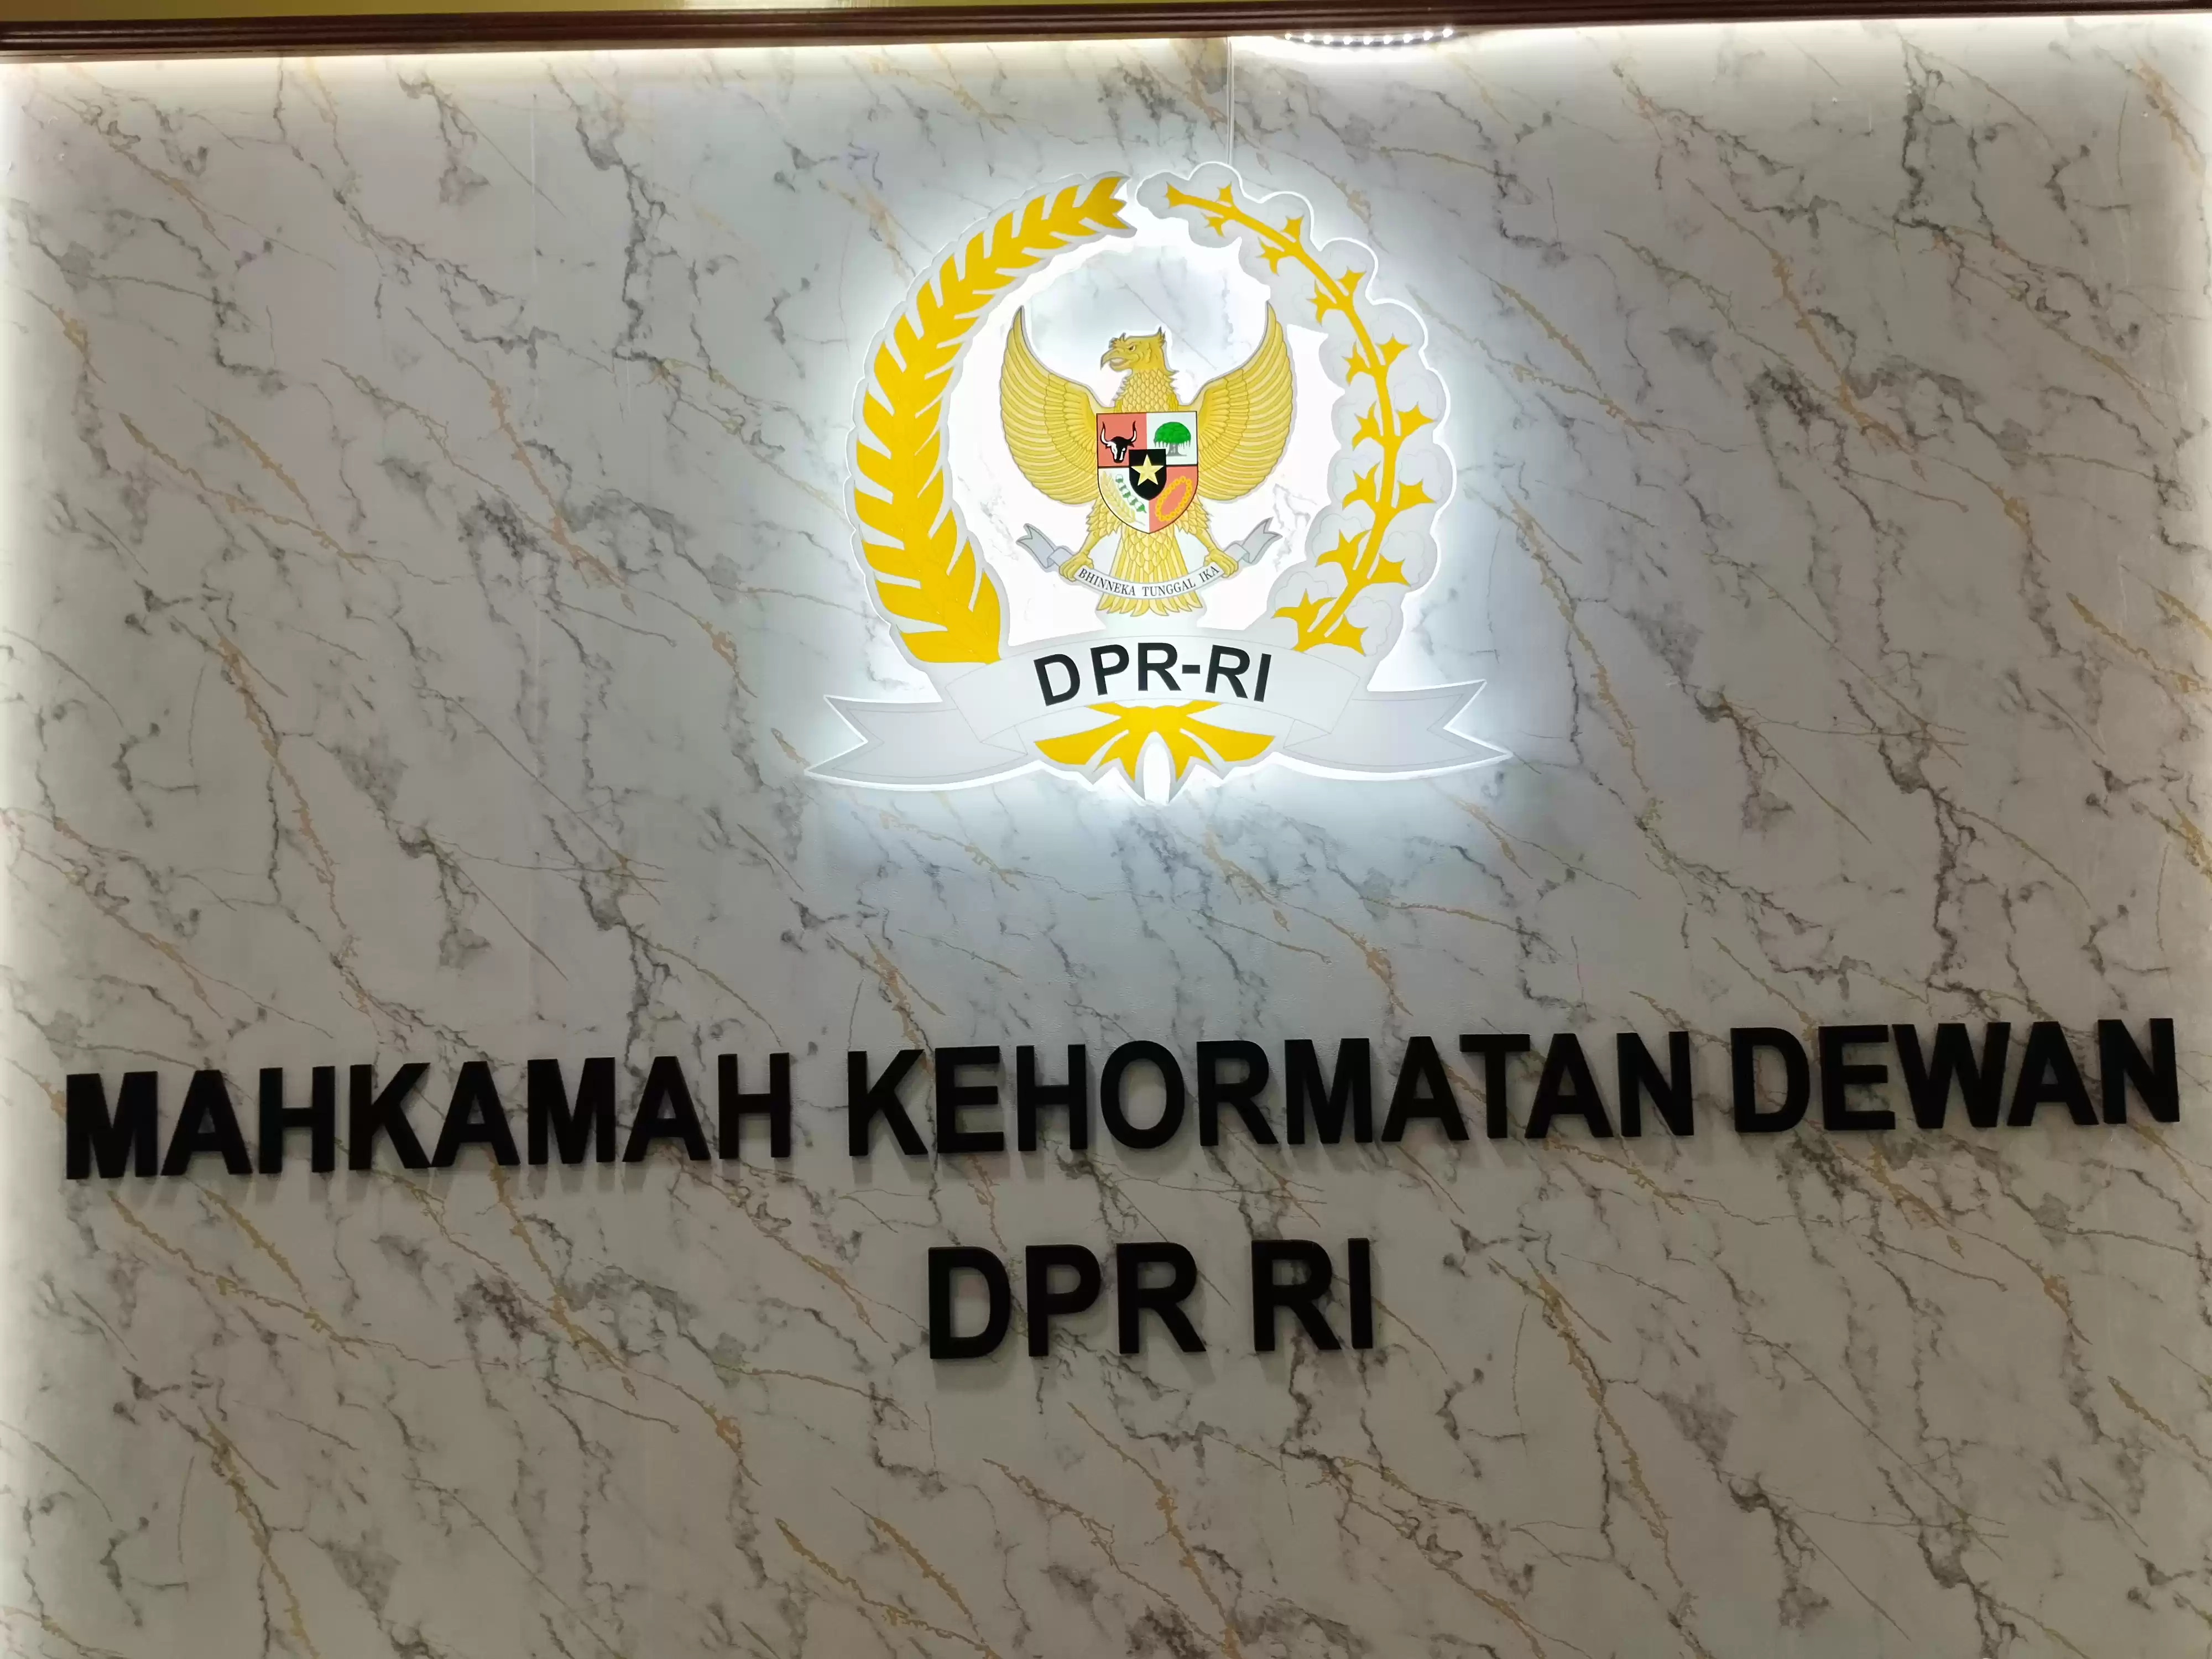 Mahkamah Kehormatan Dewan (MKD) DPR RI (Foto: MI/Dhanis)